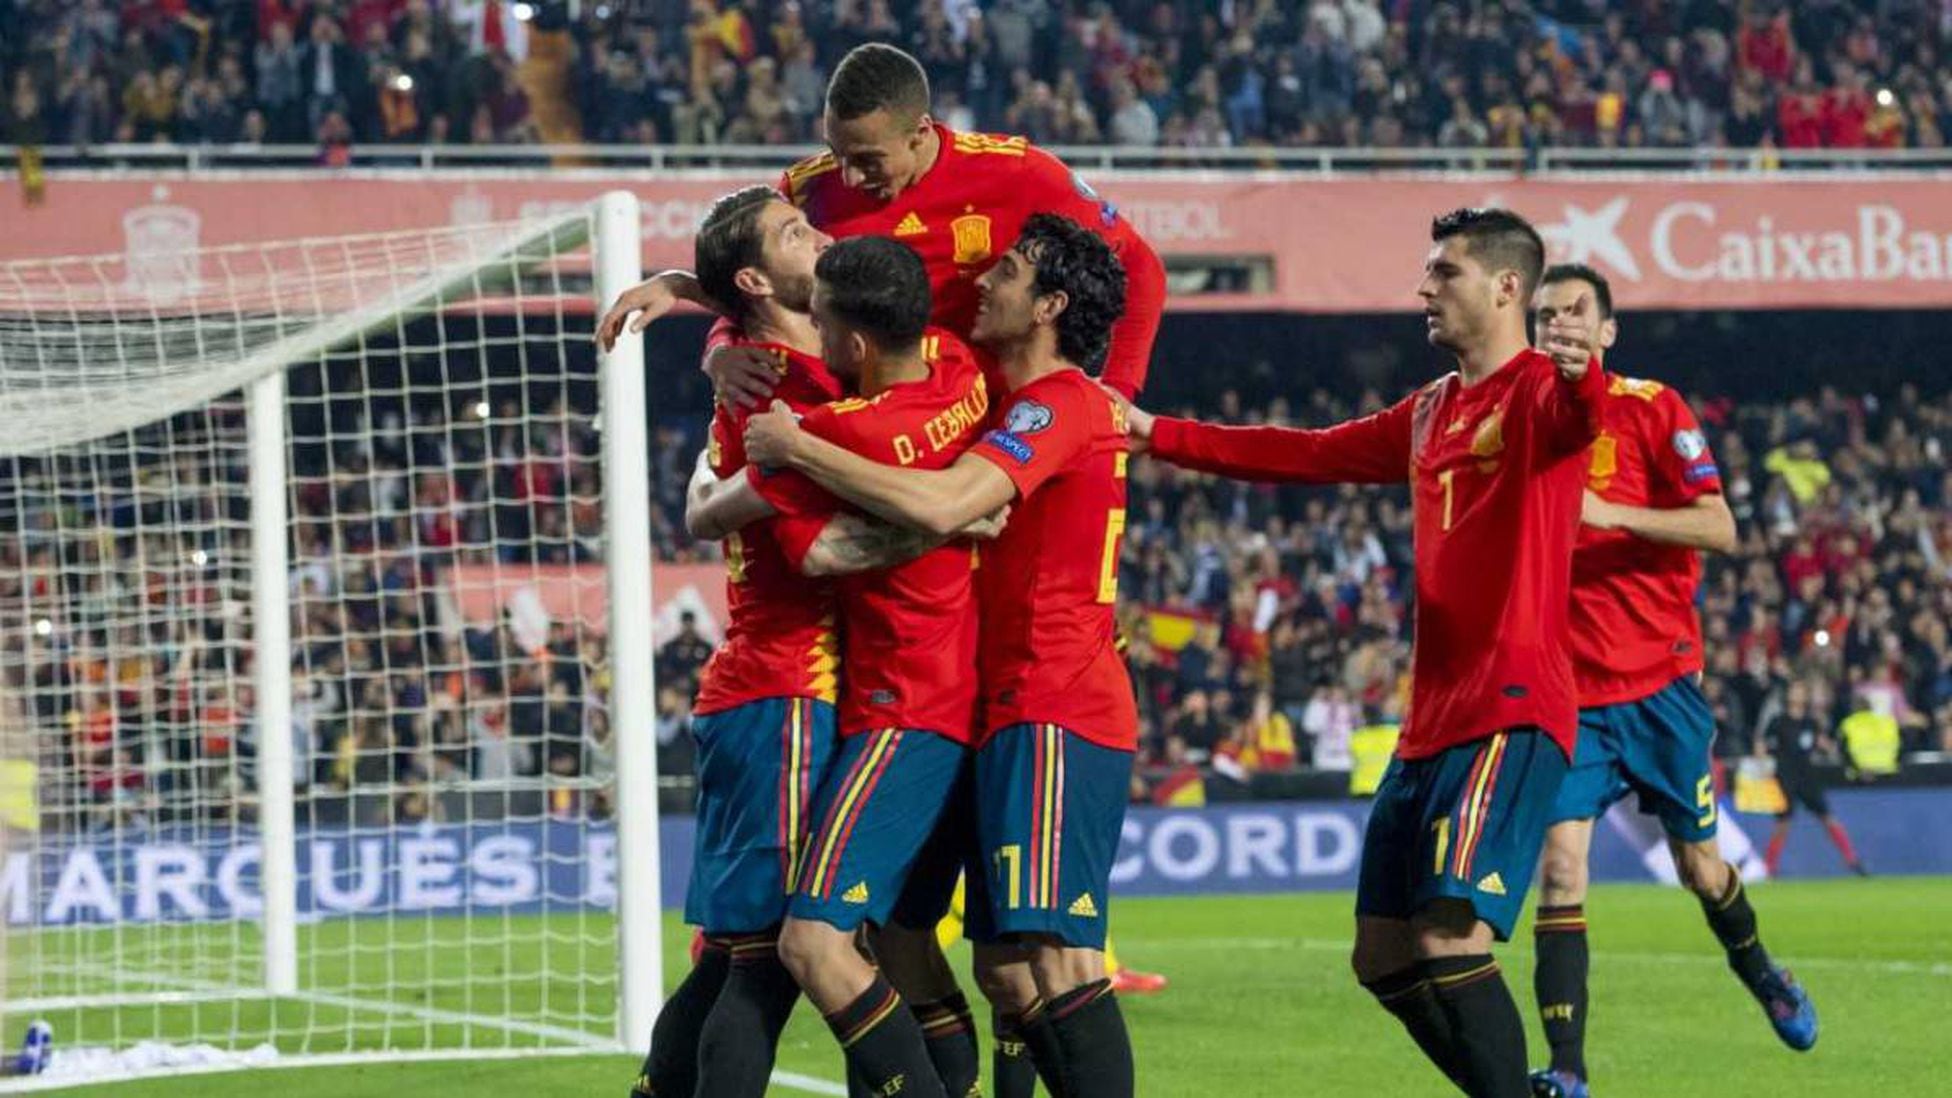 España 2-1 y goles del partido - AS.com